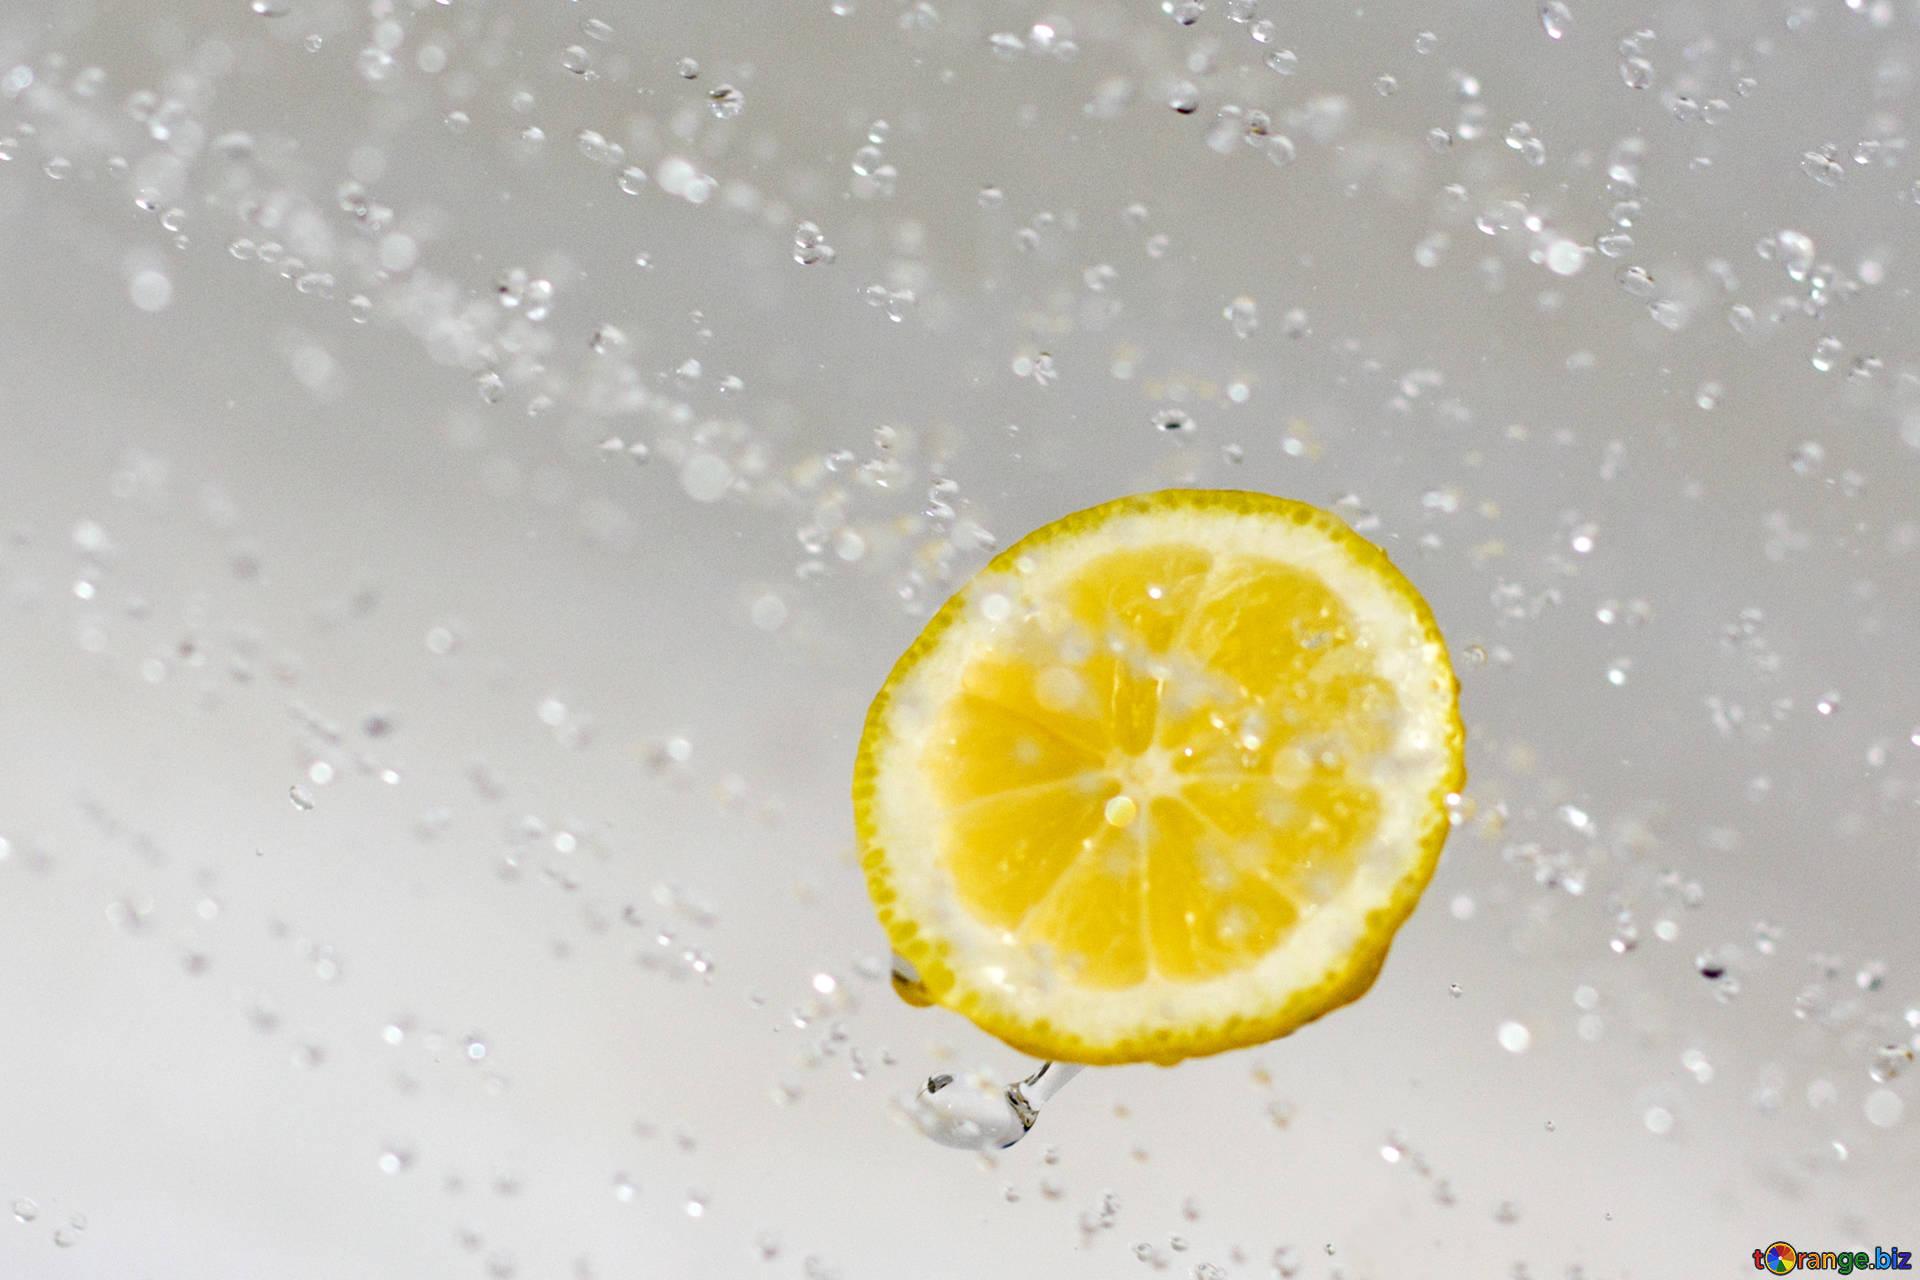 Lemons in water lemon and water drops citrus № 16180